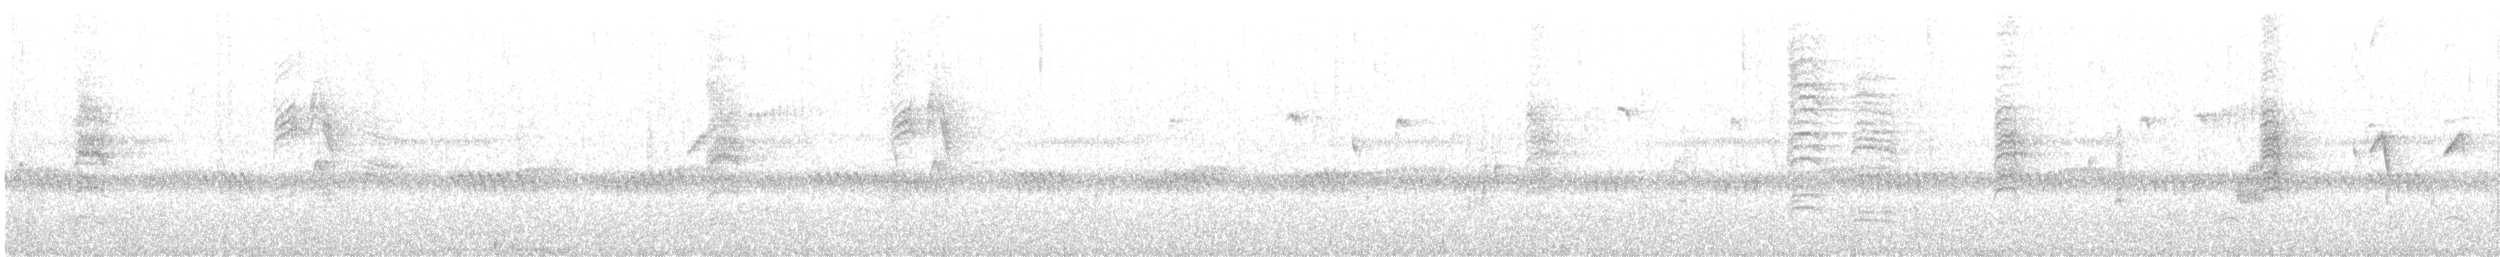 Ak Karınlı Kasapkuşu - ML619655430